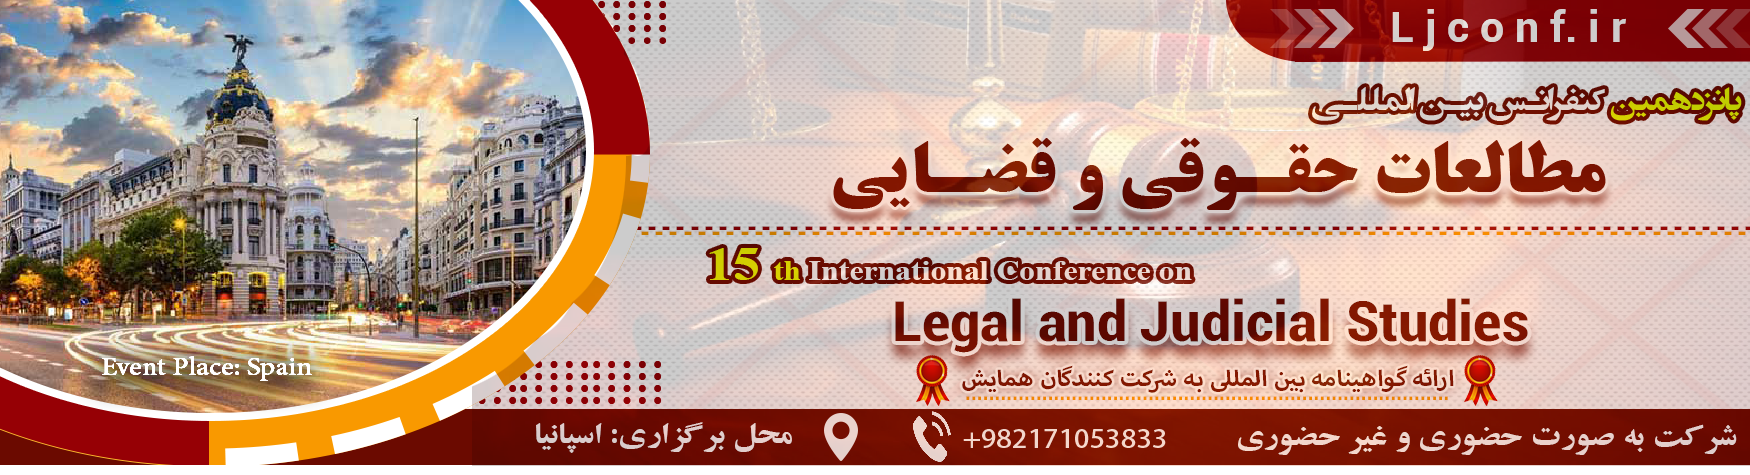 کنفرانس بین المللی مطالعات حقوقی و قضایی